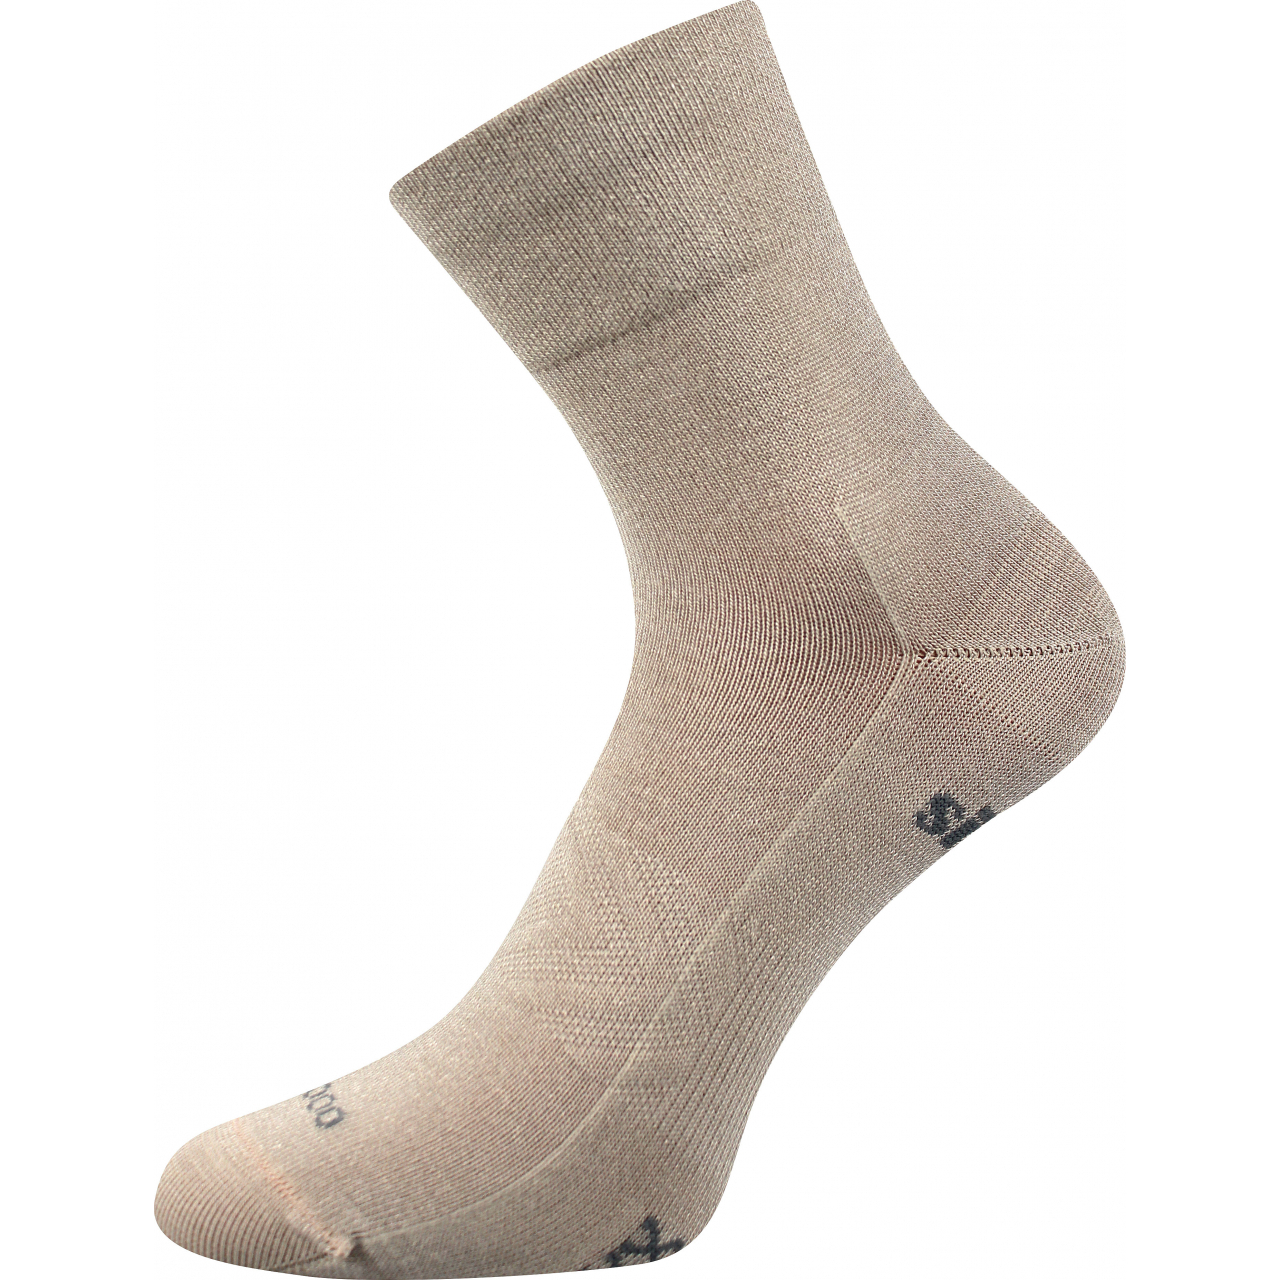 Ponožky sportovní unisex Voxx Baeron - béžové, 43-46